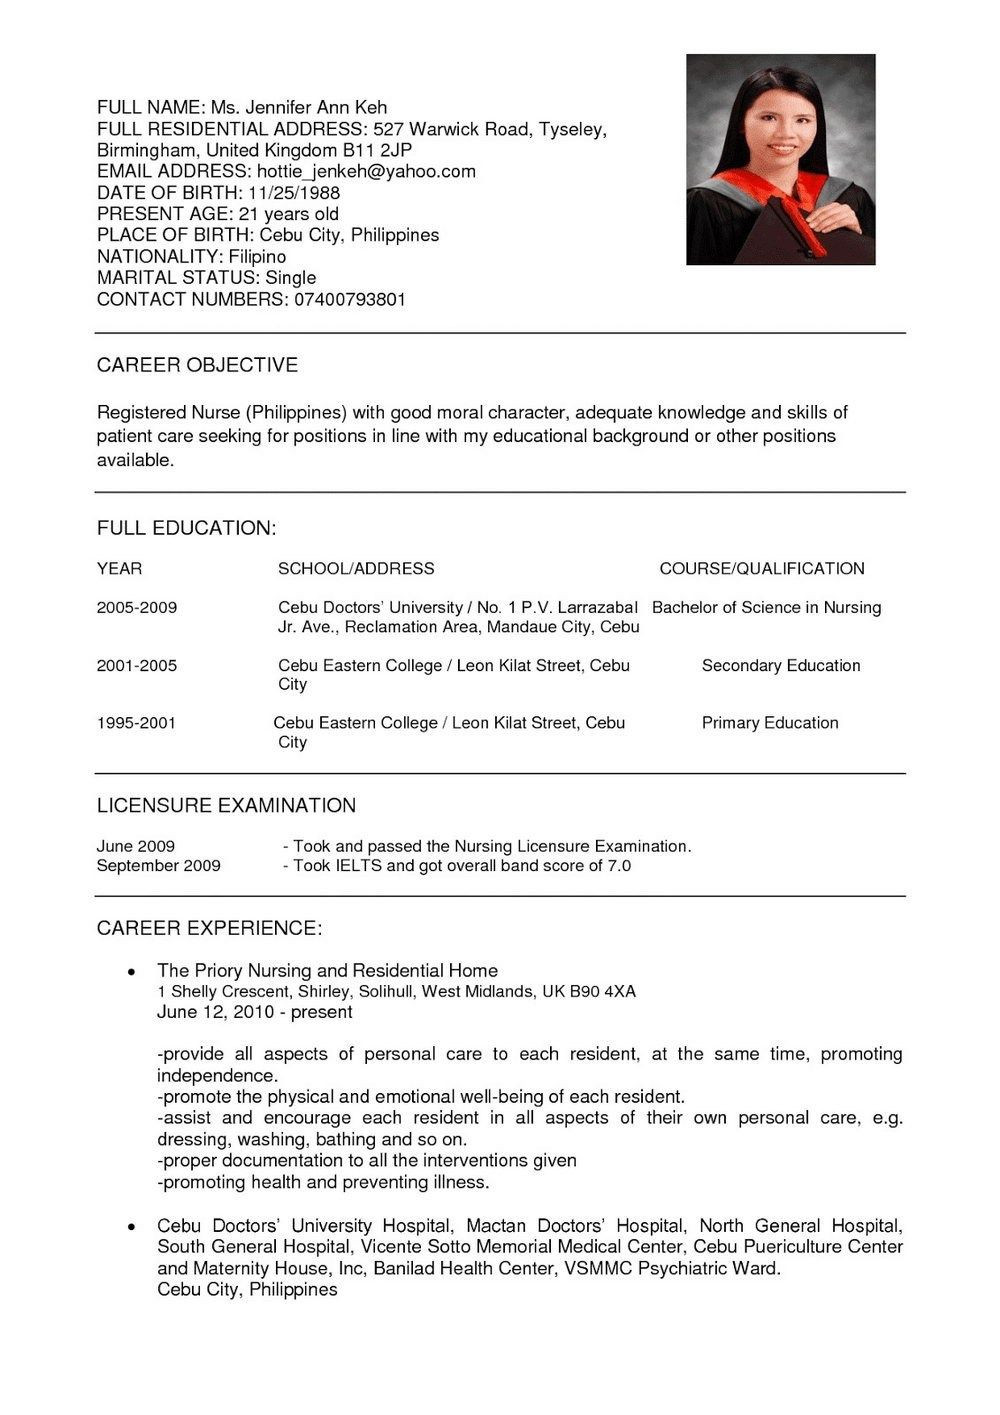 Sample Resume for Nurses In Malaysia Angelica Cordova (angelannecordova3) – Profile Pinterest